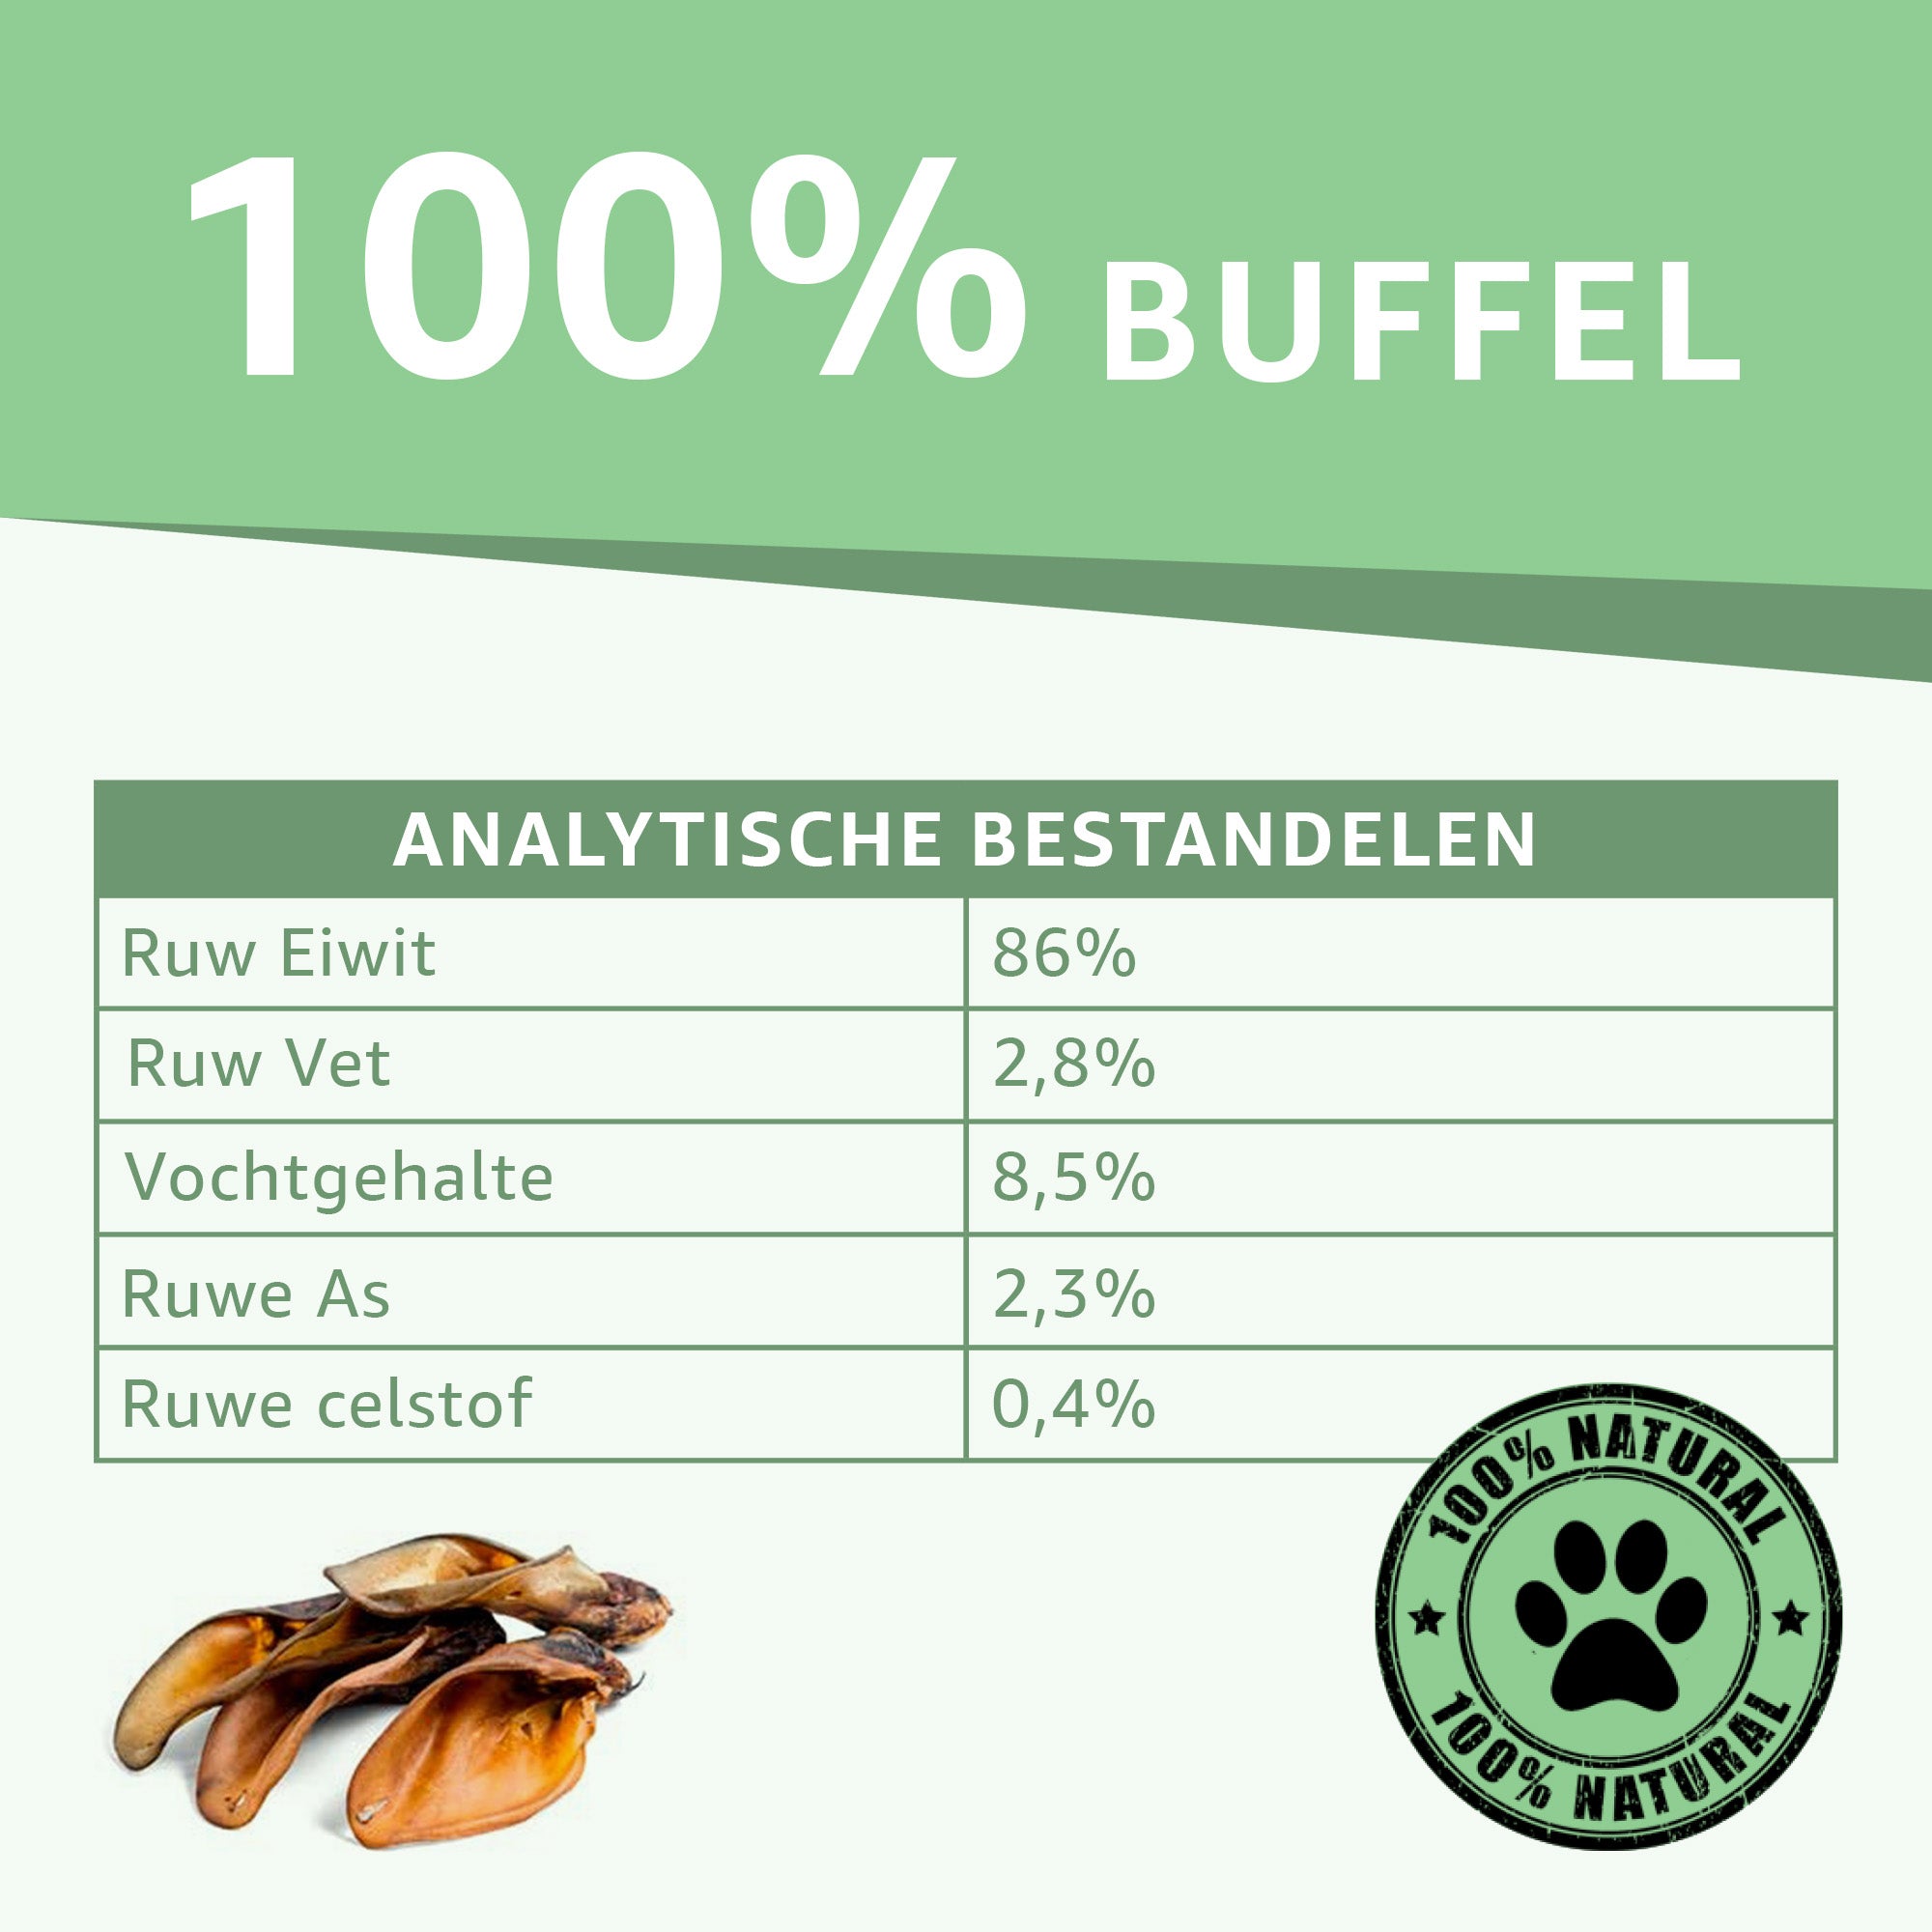 "Analytische bestandsdelen van Buffeloren hondensnacks: Ontdek de natuurlijke samenstelling. Eiwitrijk, laag vetgehalte en geen toegevoegde stoffen. De ideale balans voor een gezonde traktatie."